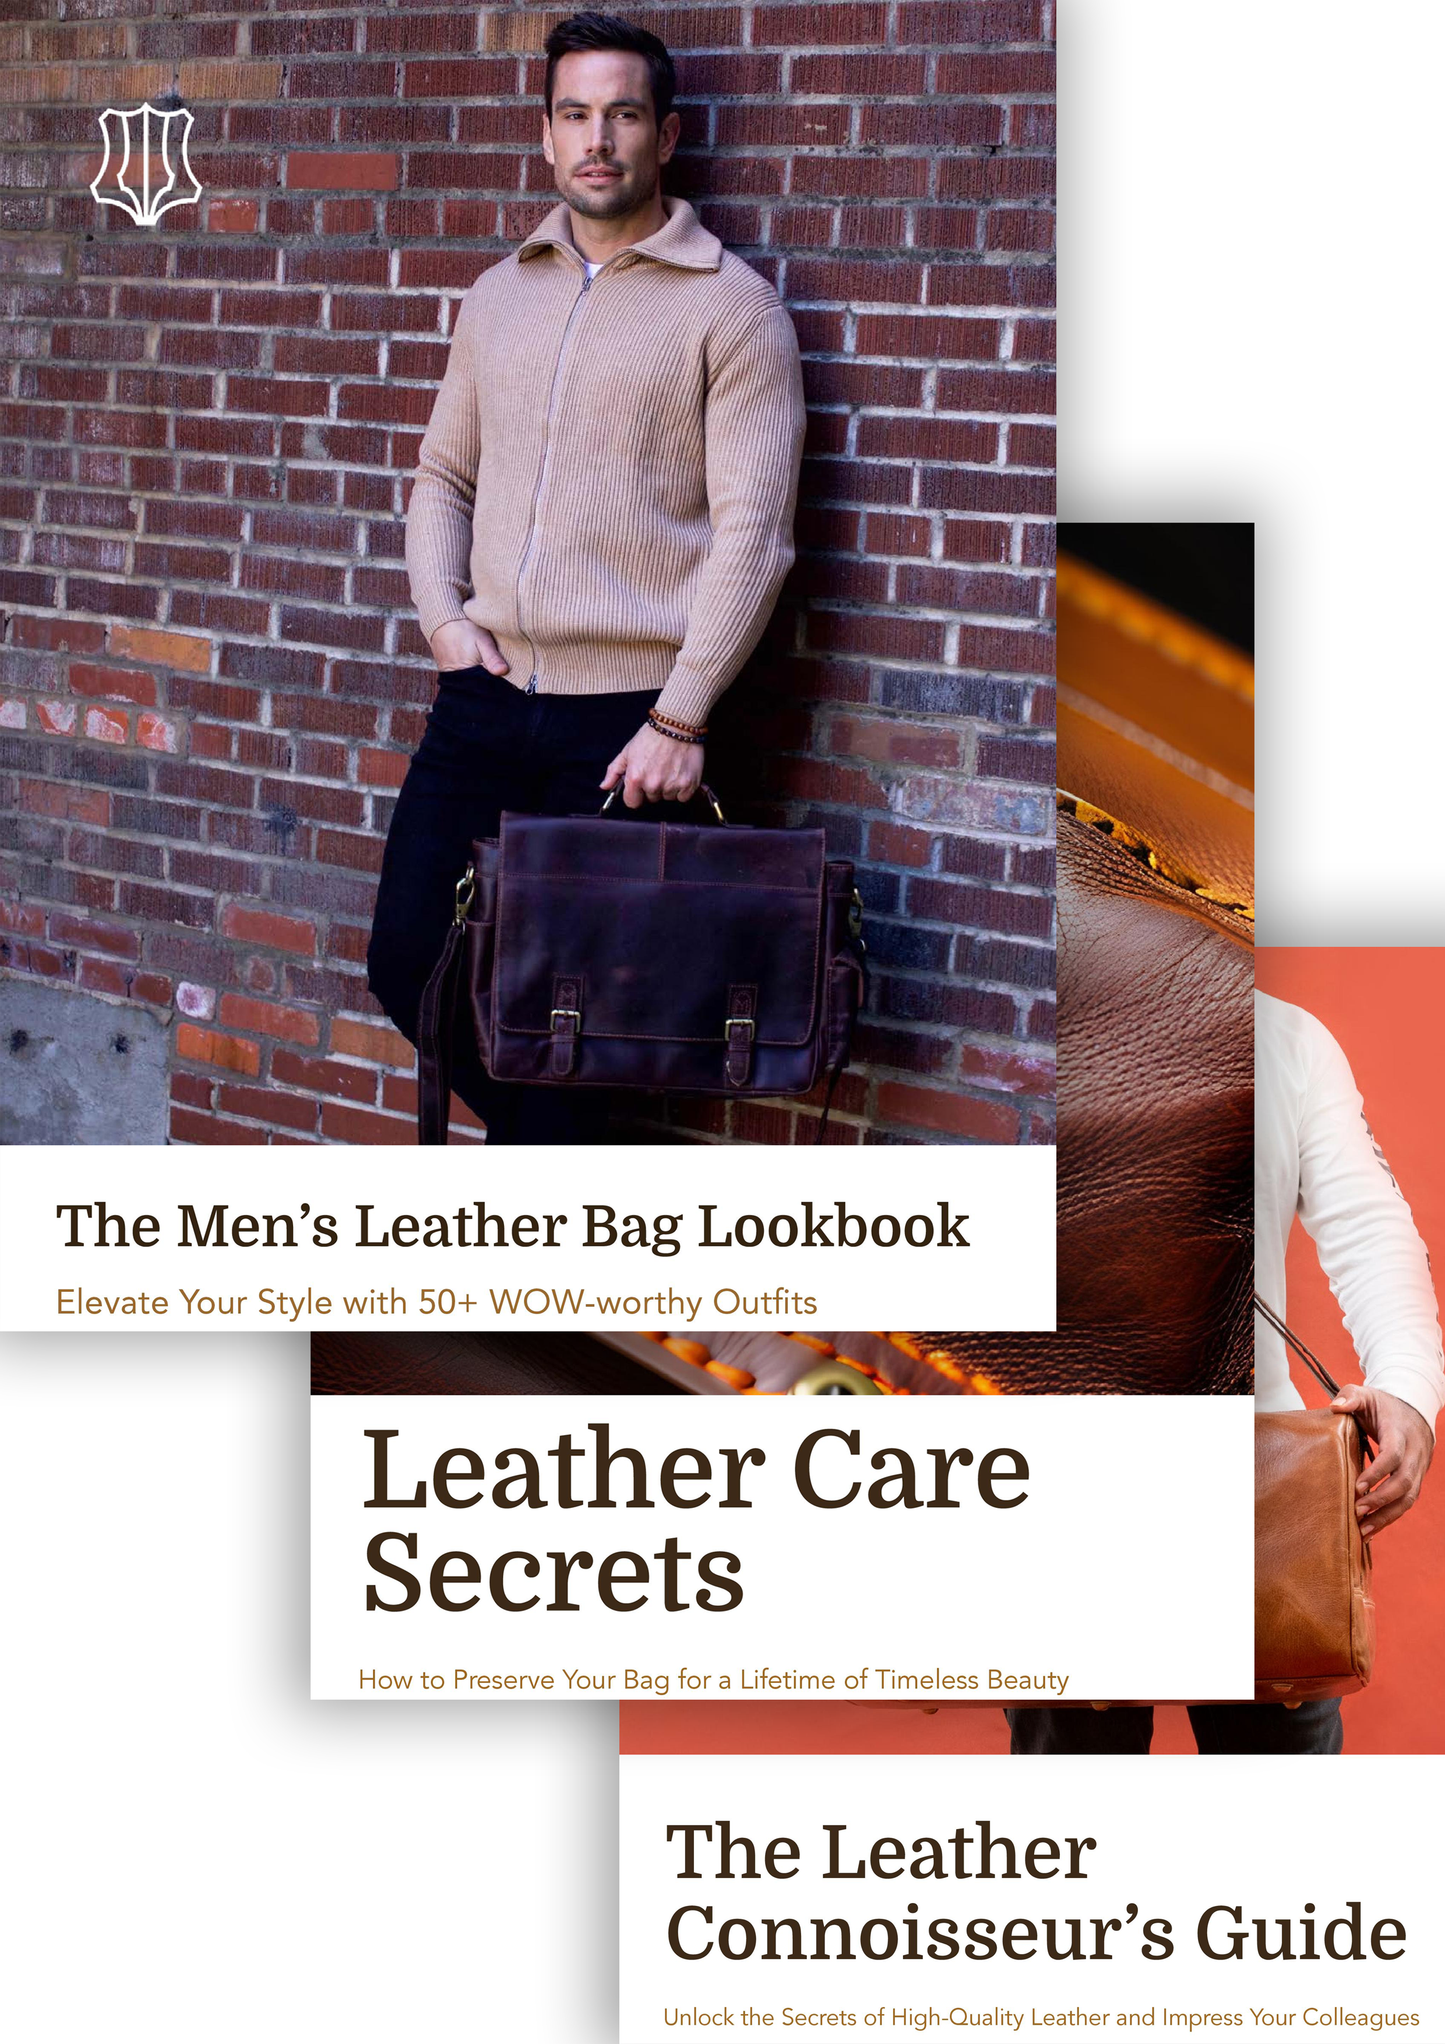 3 Ebook Bundle: The Lookbook, Care Secrets & Connoisseur's Guide